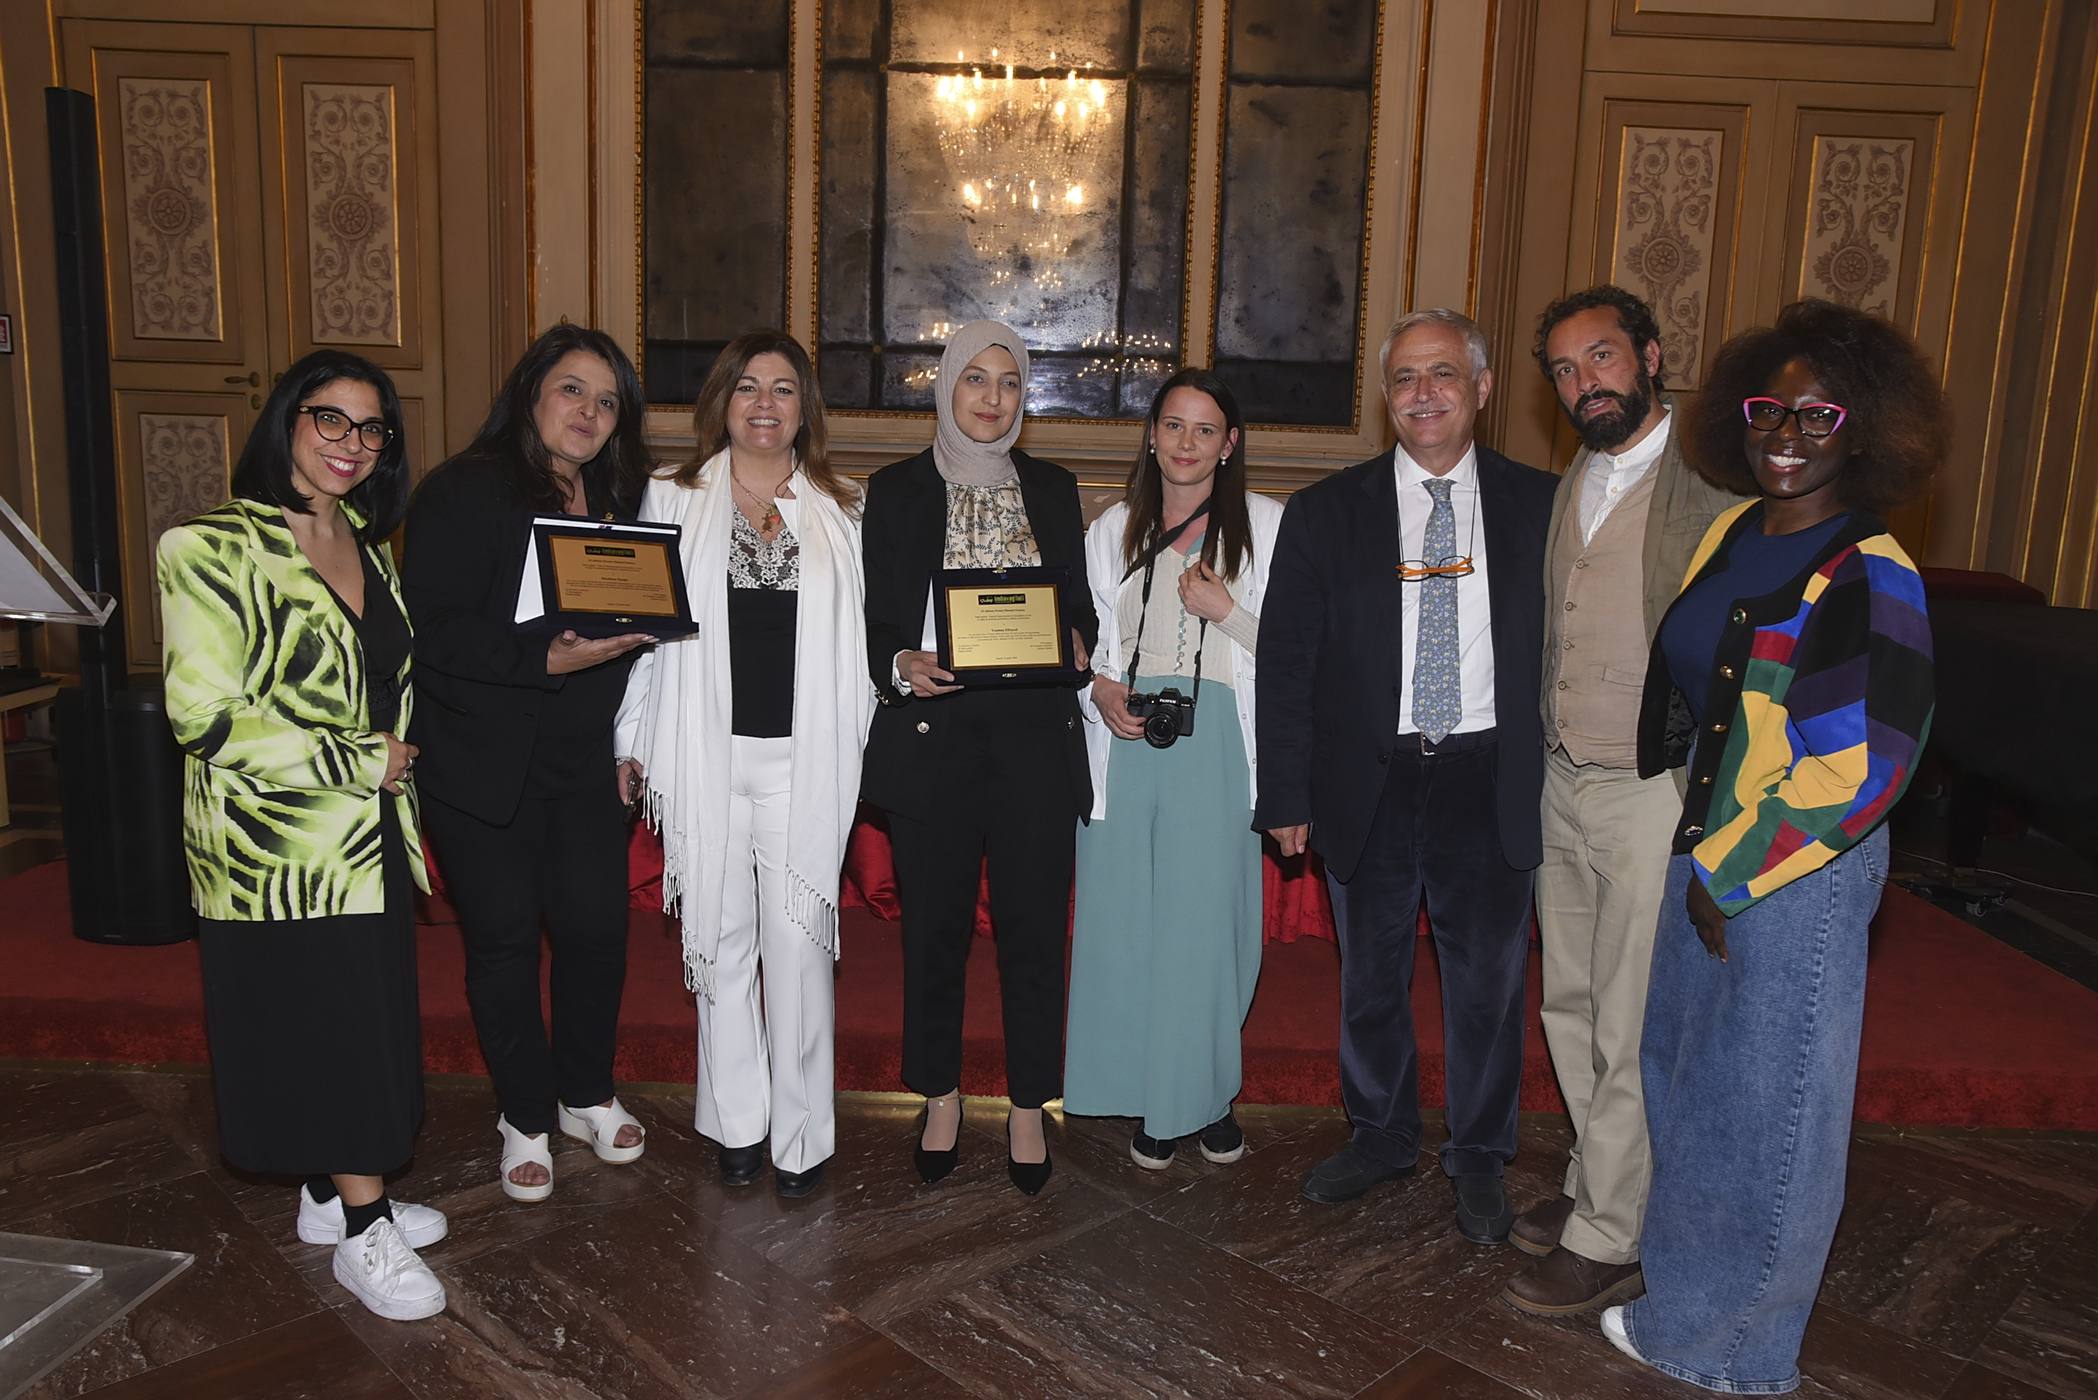 Napoli - "Imbavagliati", festival internazionale di giornalismo civile